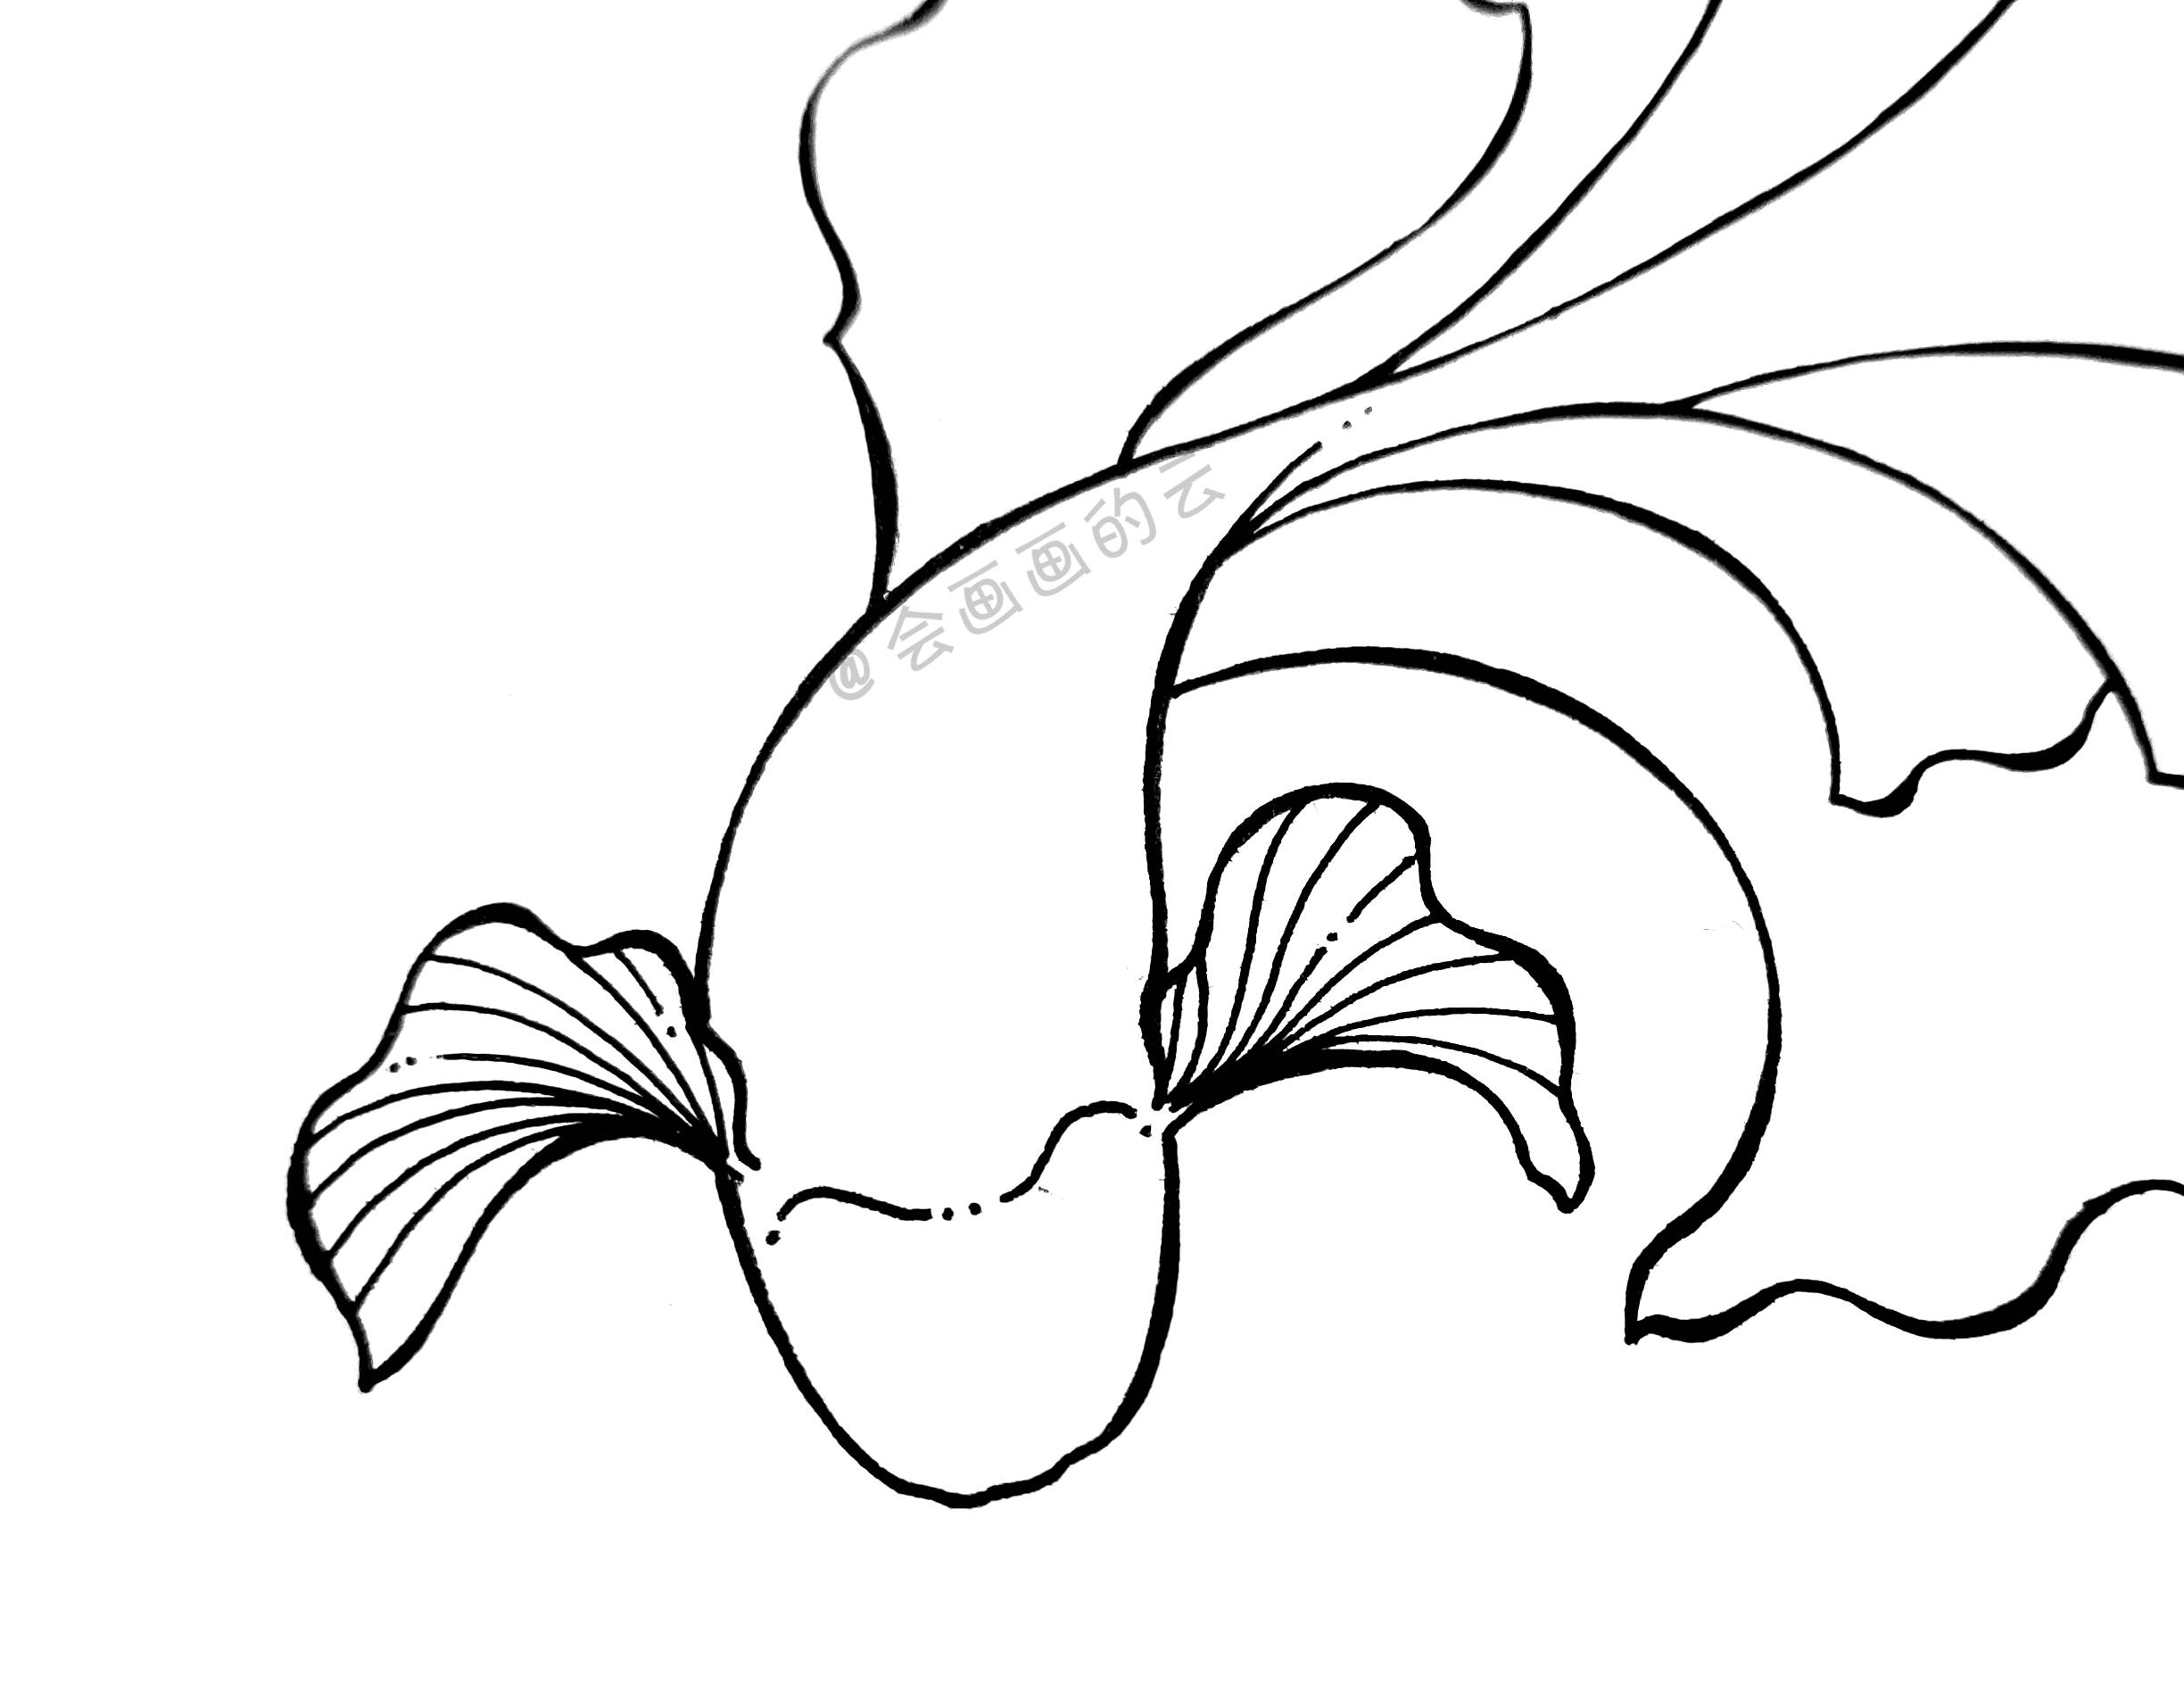 7步就可以画的简笔画,分步骤讲解教你画一条小鱼